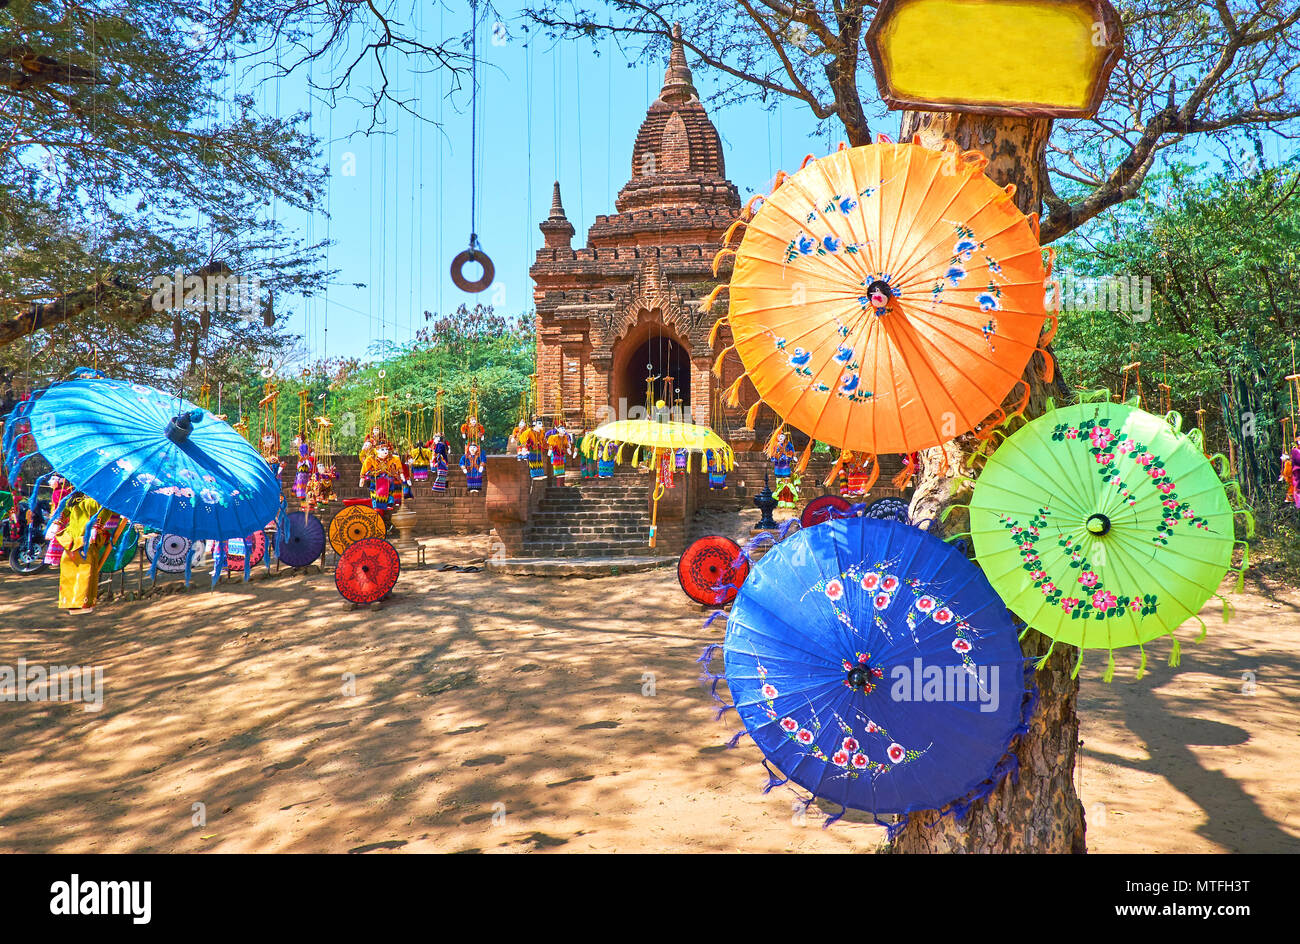 Tradizionale ombrelloni colorati e belle bambole sono appesi sull'albero accanto all'antico santuario buddista nel sito archeologico, Bagan, Myanmar Foto Stock